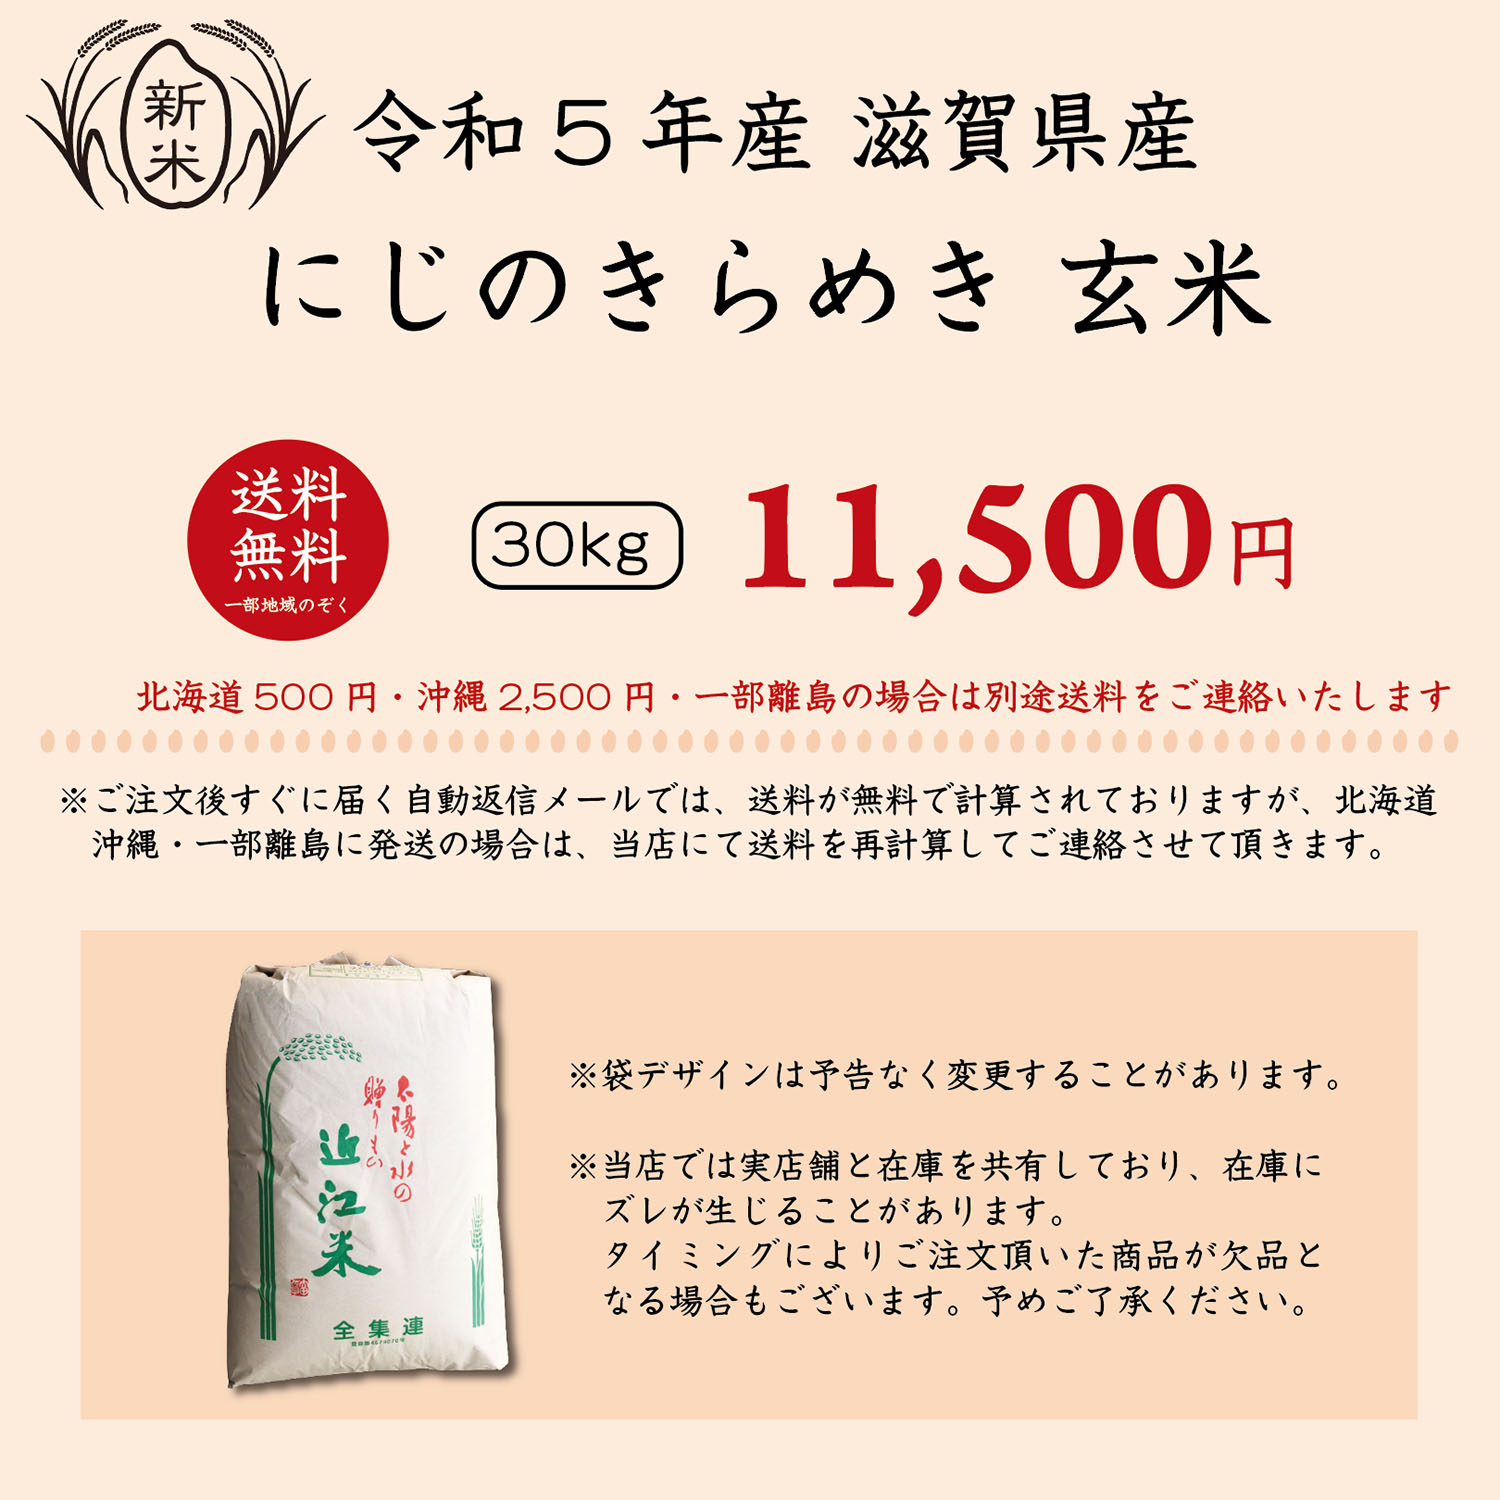 新米】【令和5年産】【送料無料】滋賀県産にじのきらめき玄米30kg